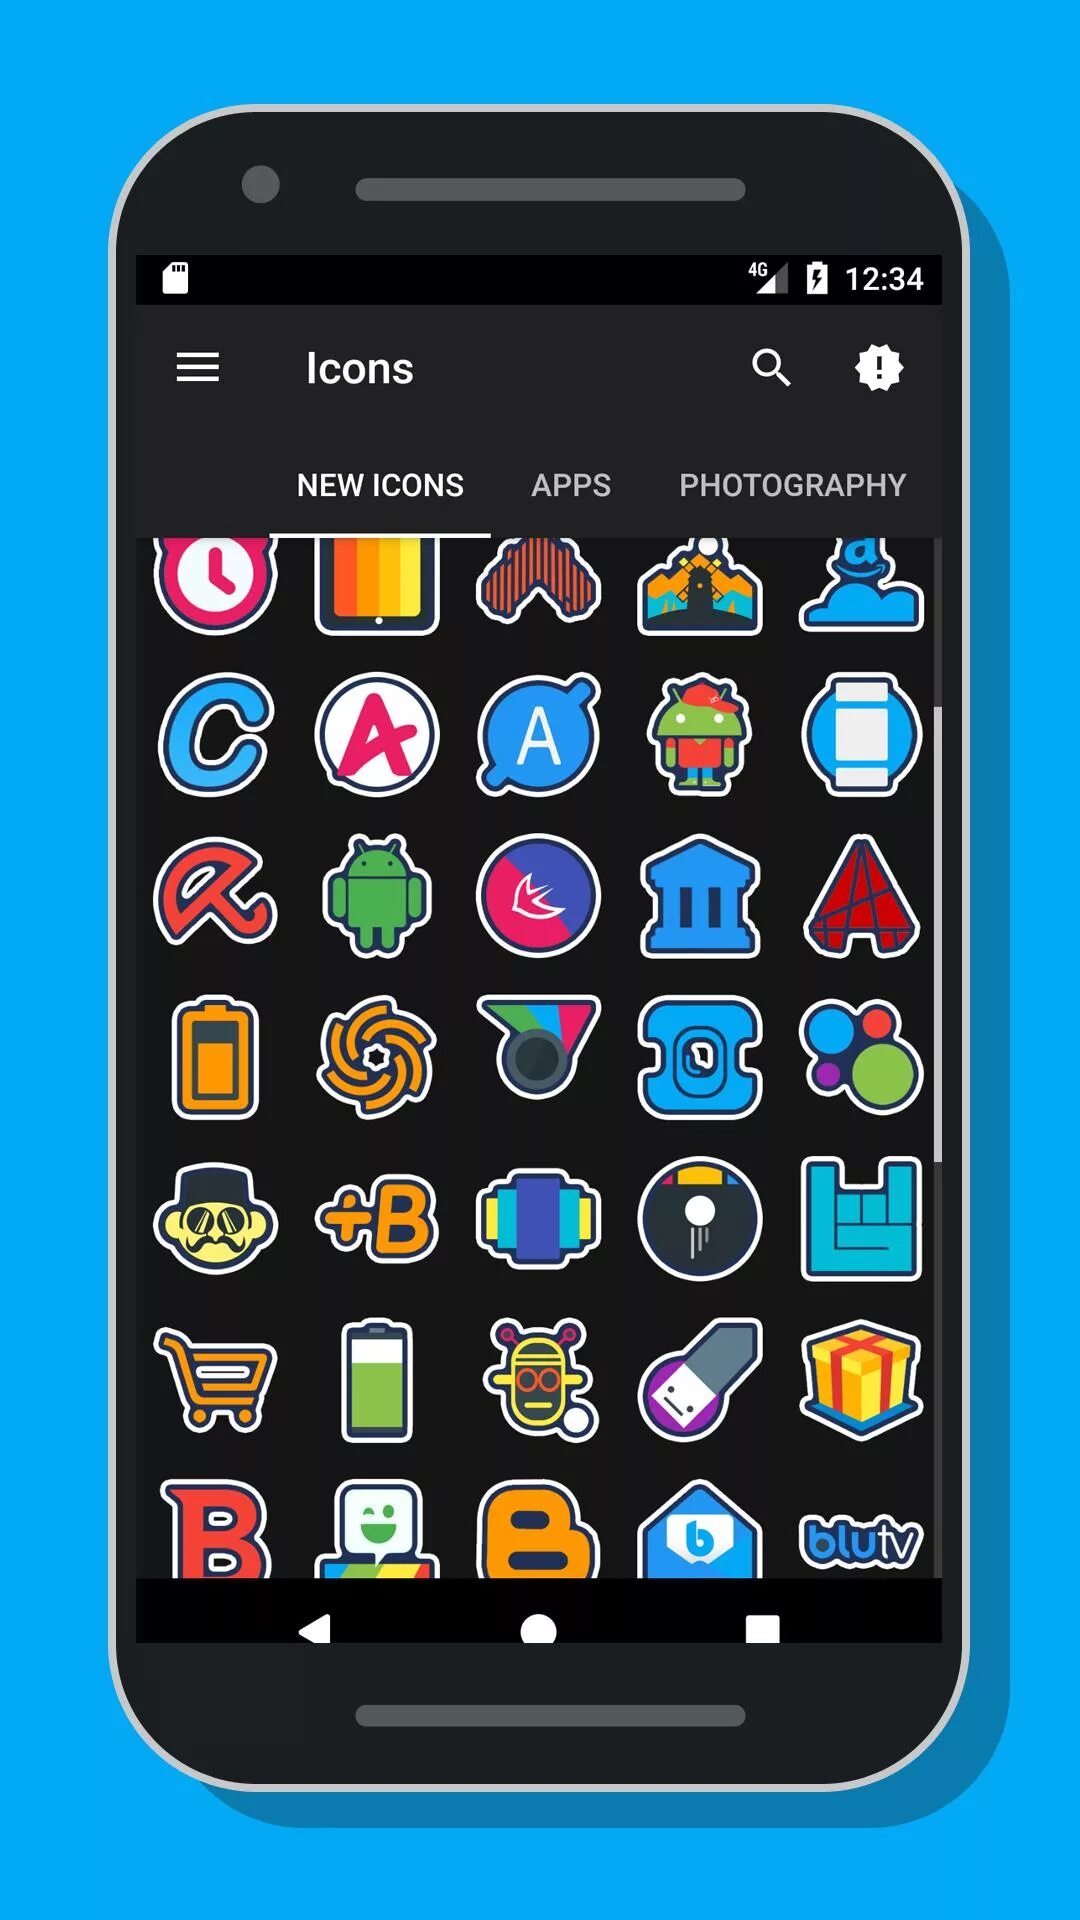 Значки на иконках андроид. Красивые иконки для приложений. Иконки приложений для андроид. Иконки для приложений Android. Квадратные иконки для андроид.